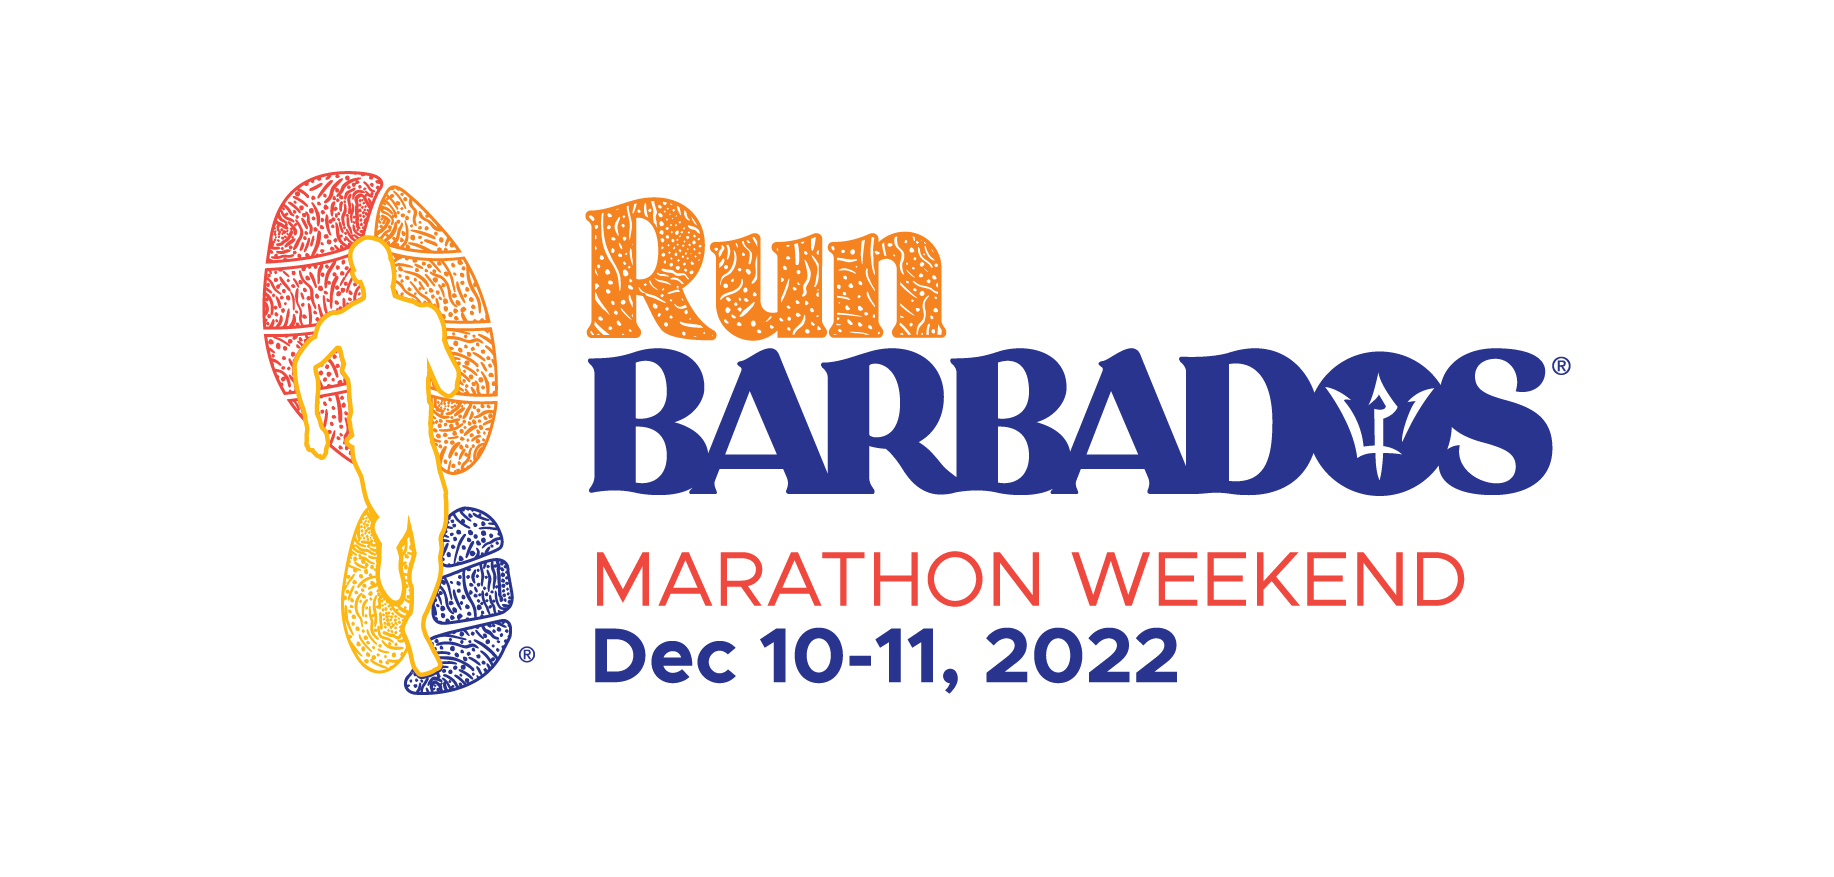 Corri Barbados - Fine settimana della maratona